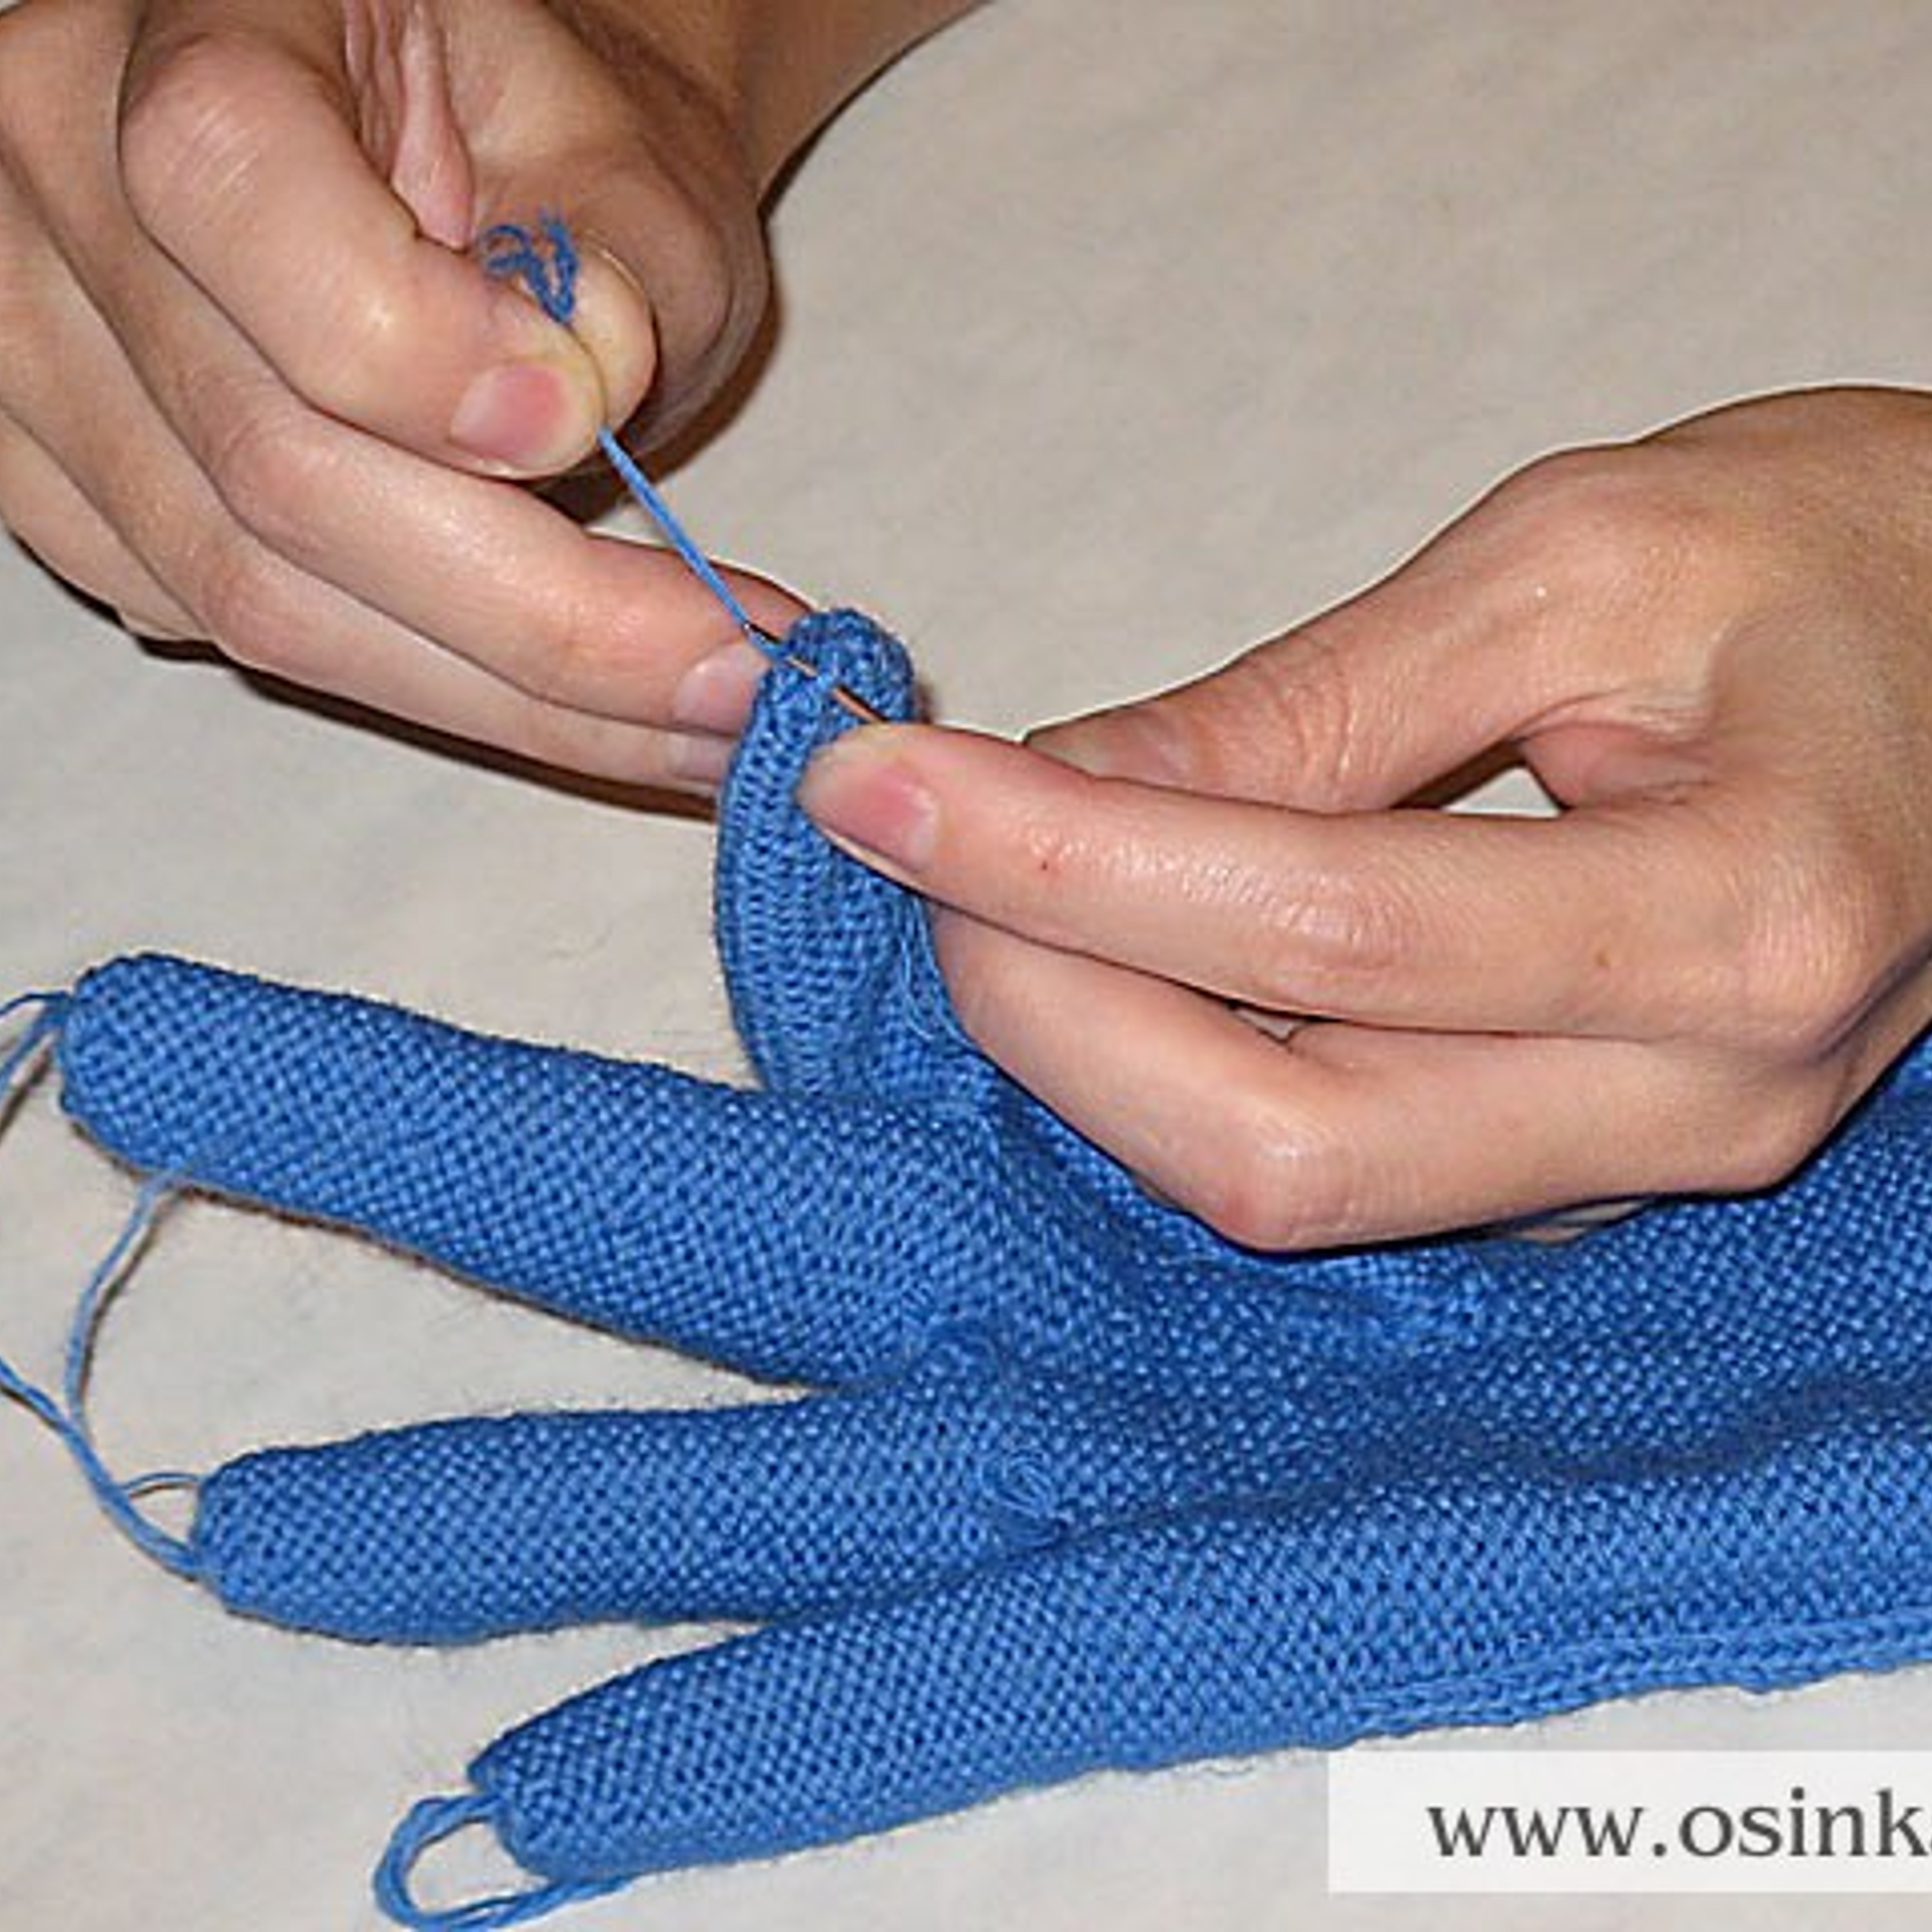 После окончания вязания, вывести все оборванные нити на изнаночную сторону перчатки и аккуратно закрепить крючком.